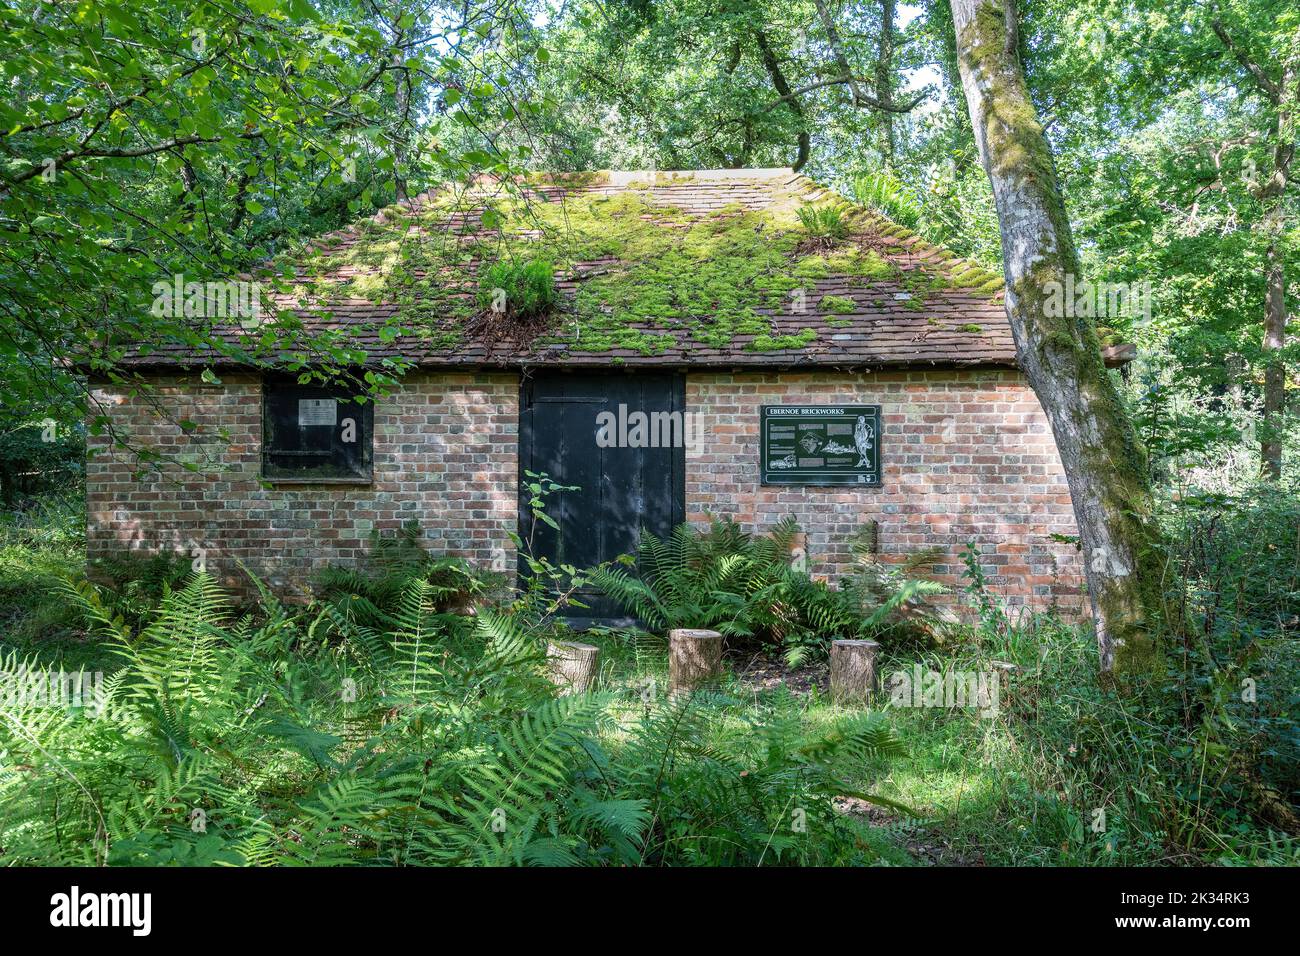 Ebernoe resti comuni di vecchi edifici in mattoni e forno nel bosco, Sussex occidentale, Inghilterra, Regno Unito. Il capannone di stampaggio restaurato. Foto Stock